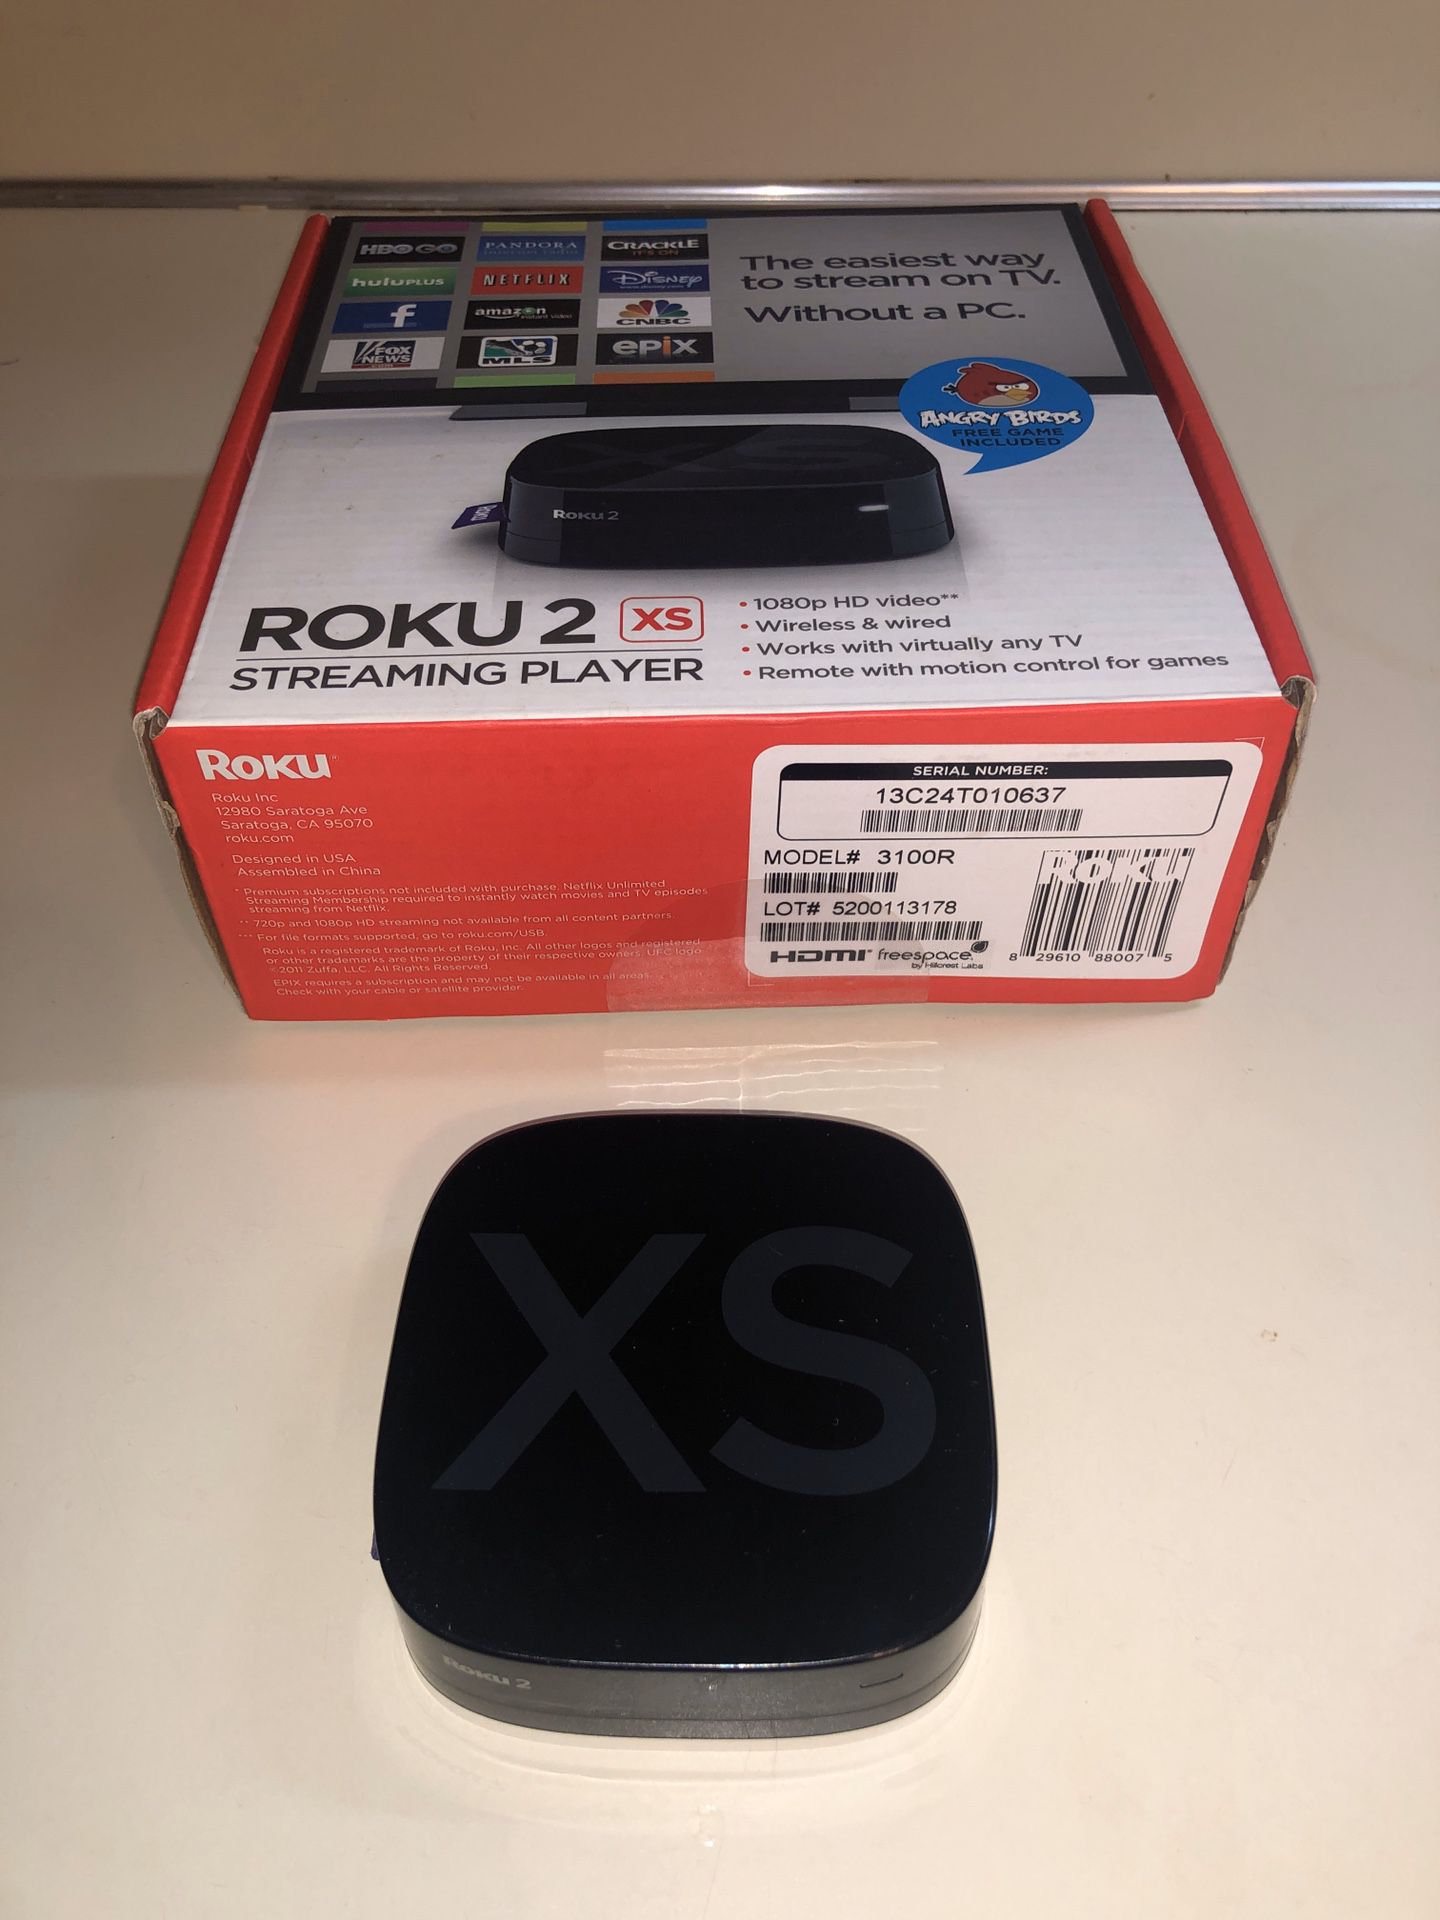 Roku 2xs (no remote)